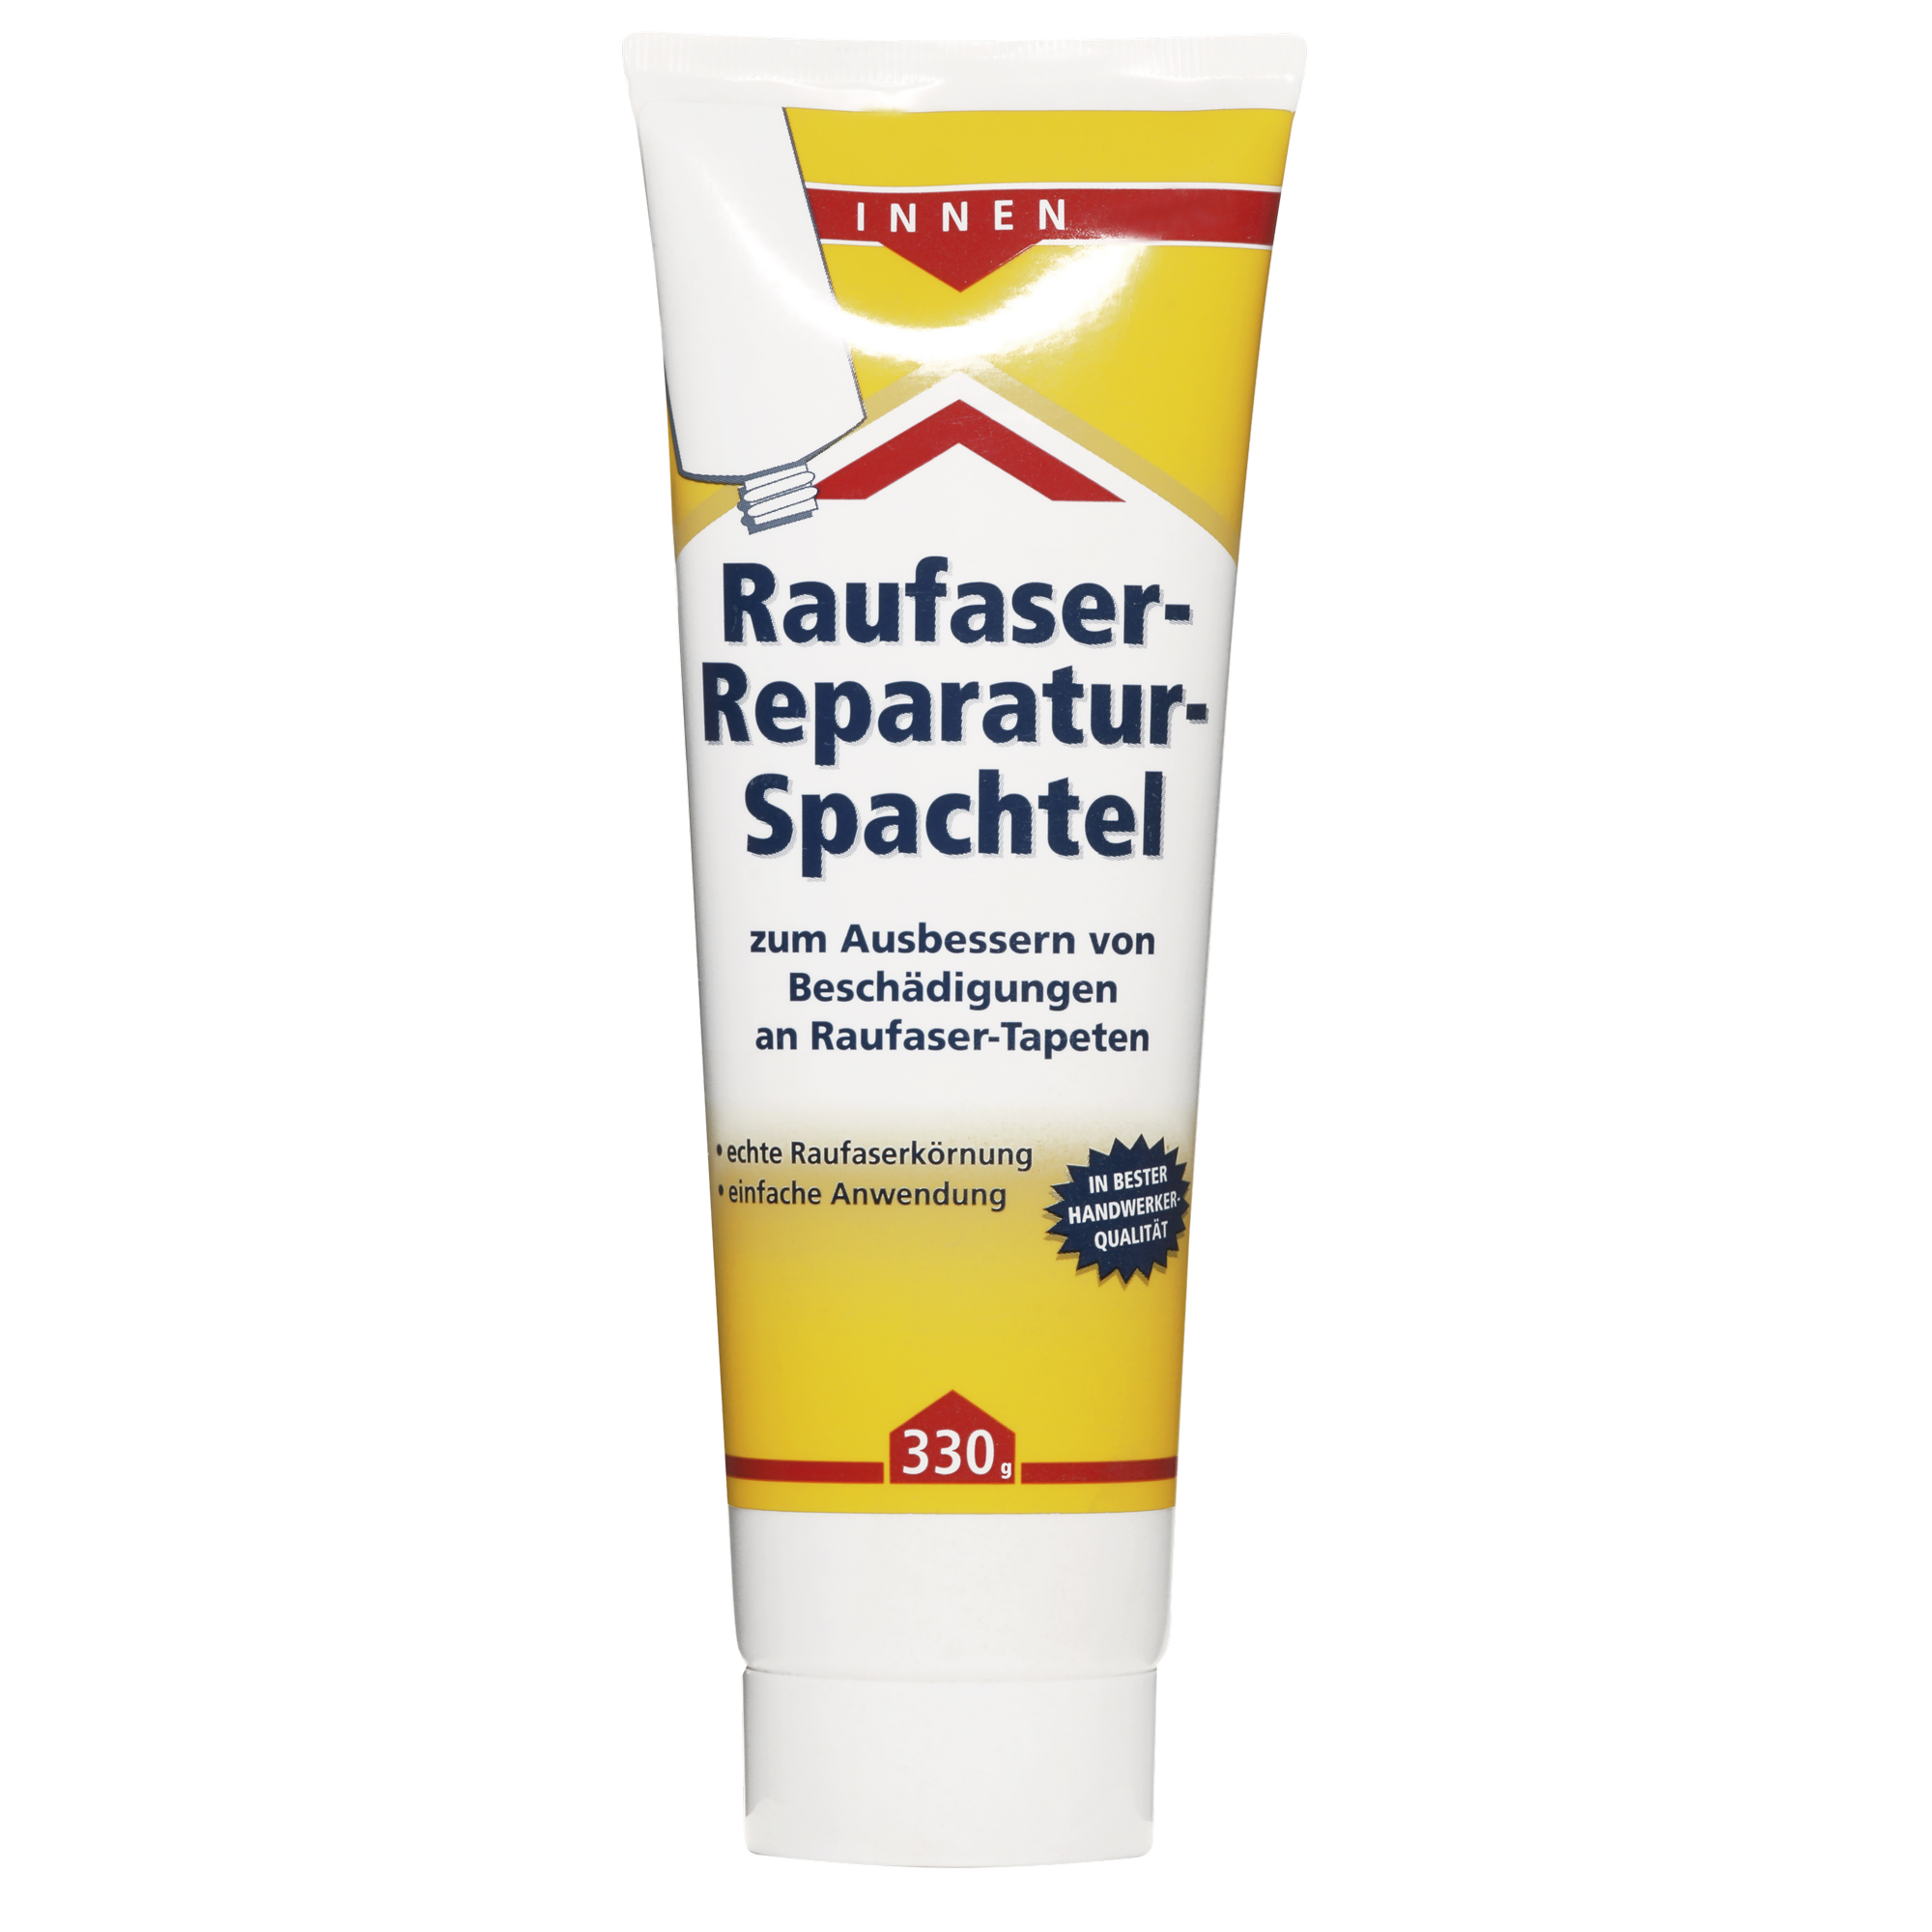 Raufaser-Reparatur-Spachtel weiß 330 g + product picture